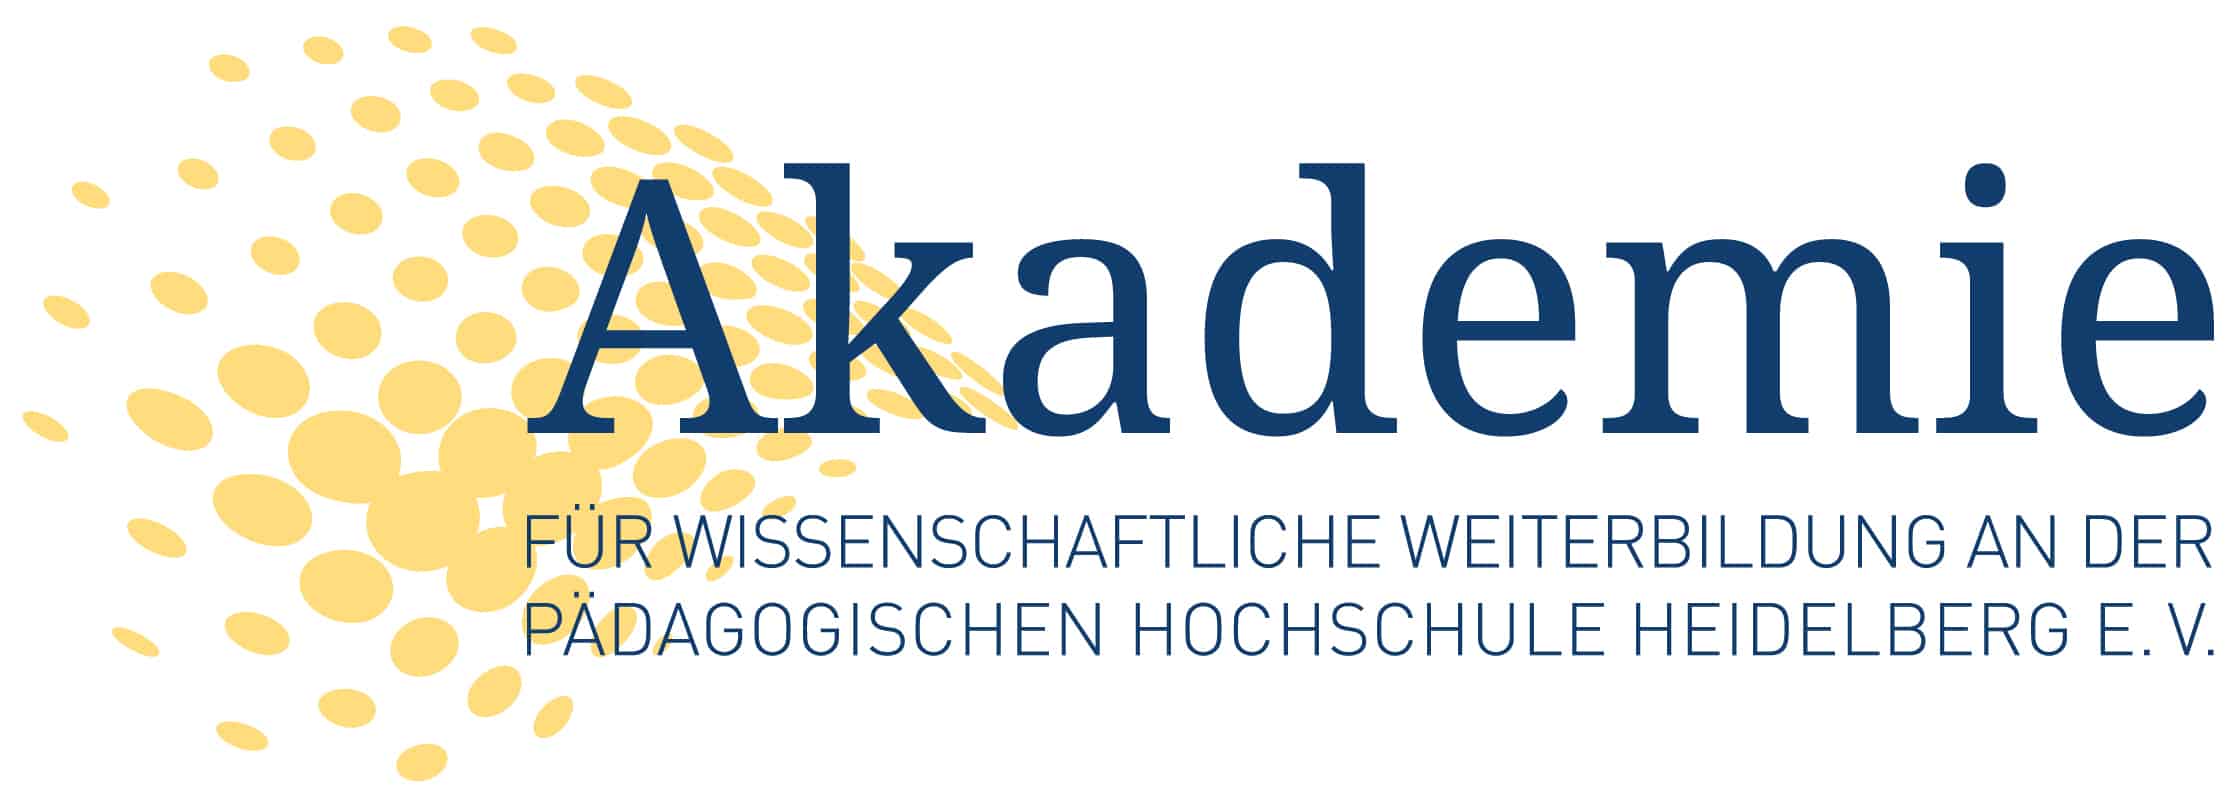 Logo_Akademie für wissenschaftliche Weiterbildung an der Pädagogischen Hochschule Heidelberg e.V. - PH Akademie Heidelberg - AwW